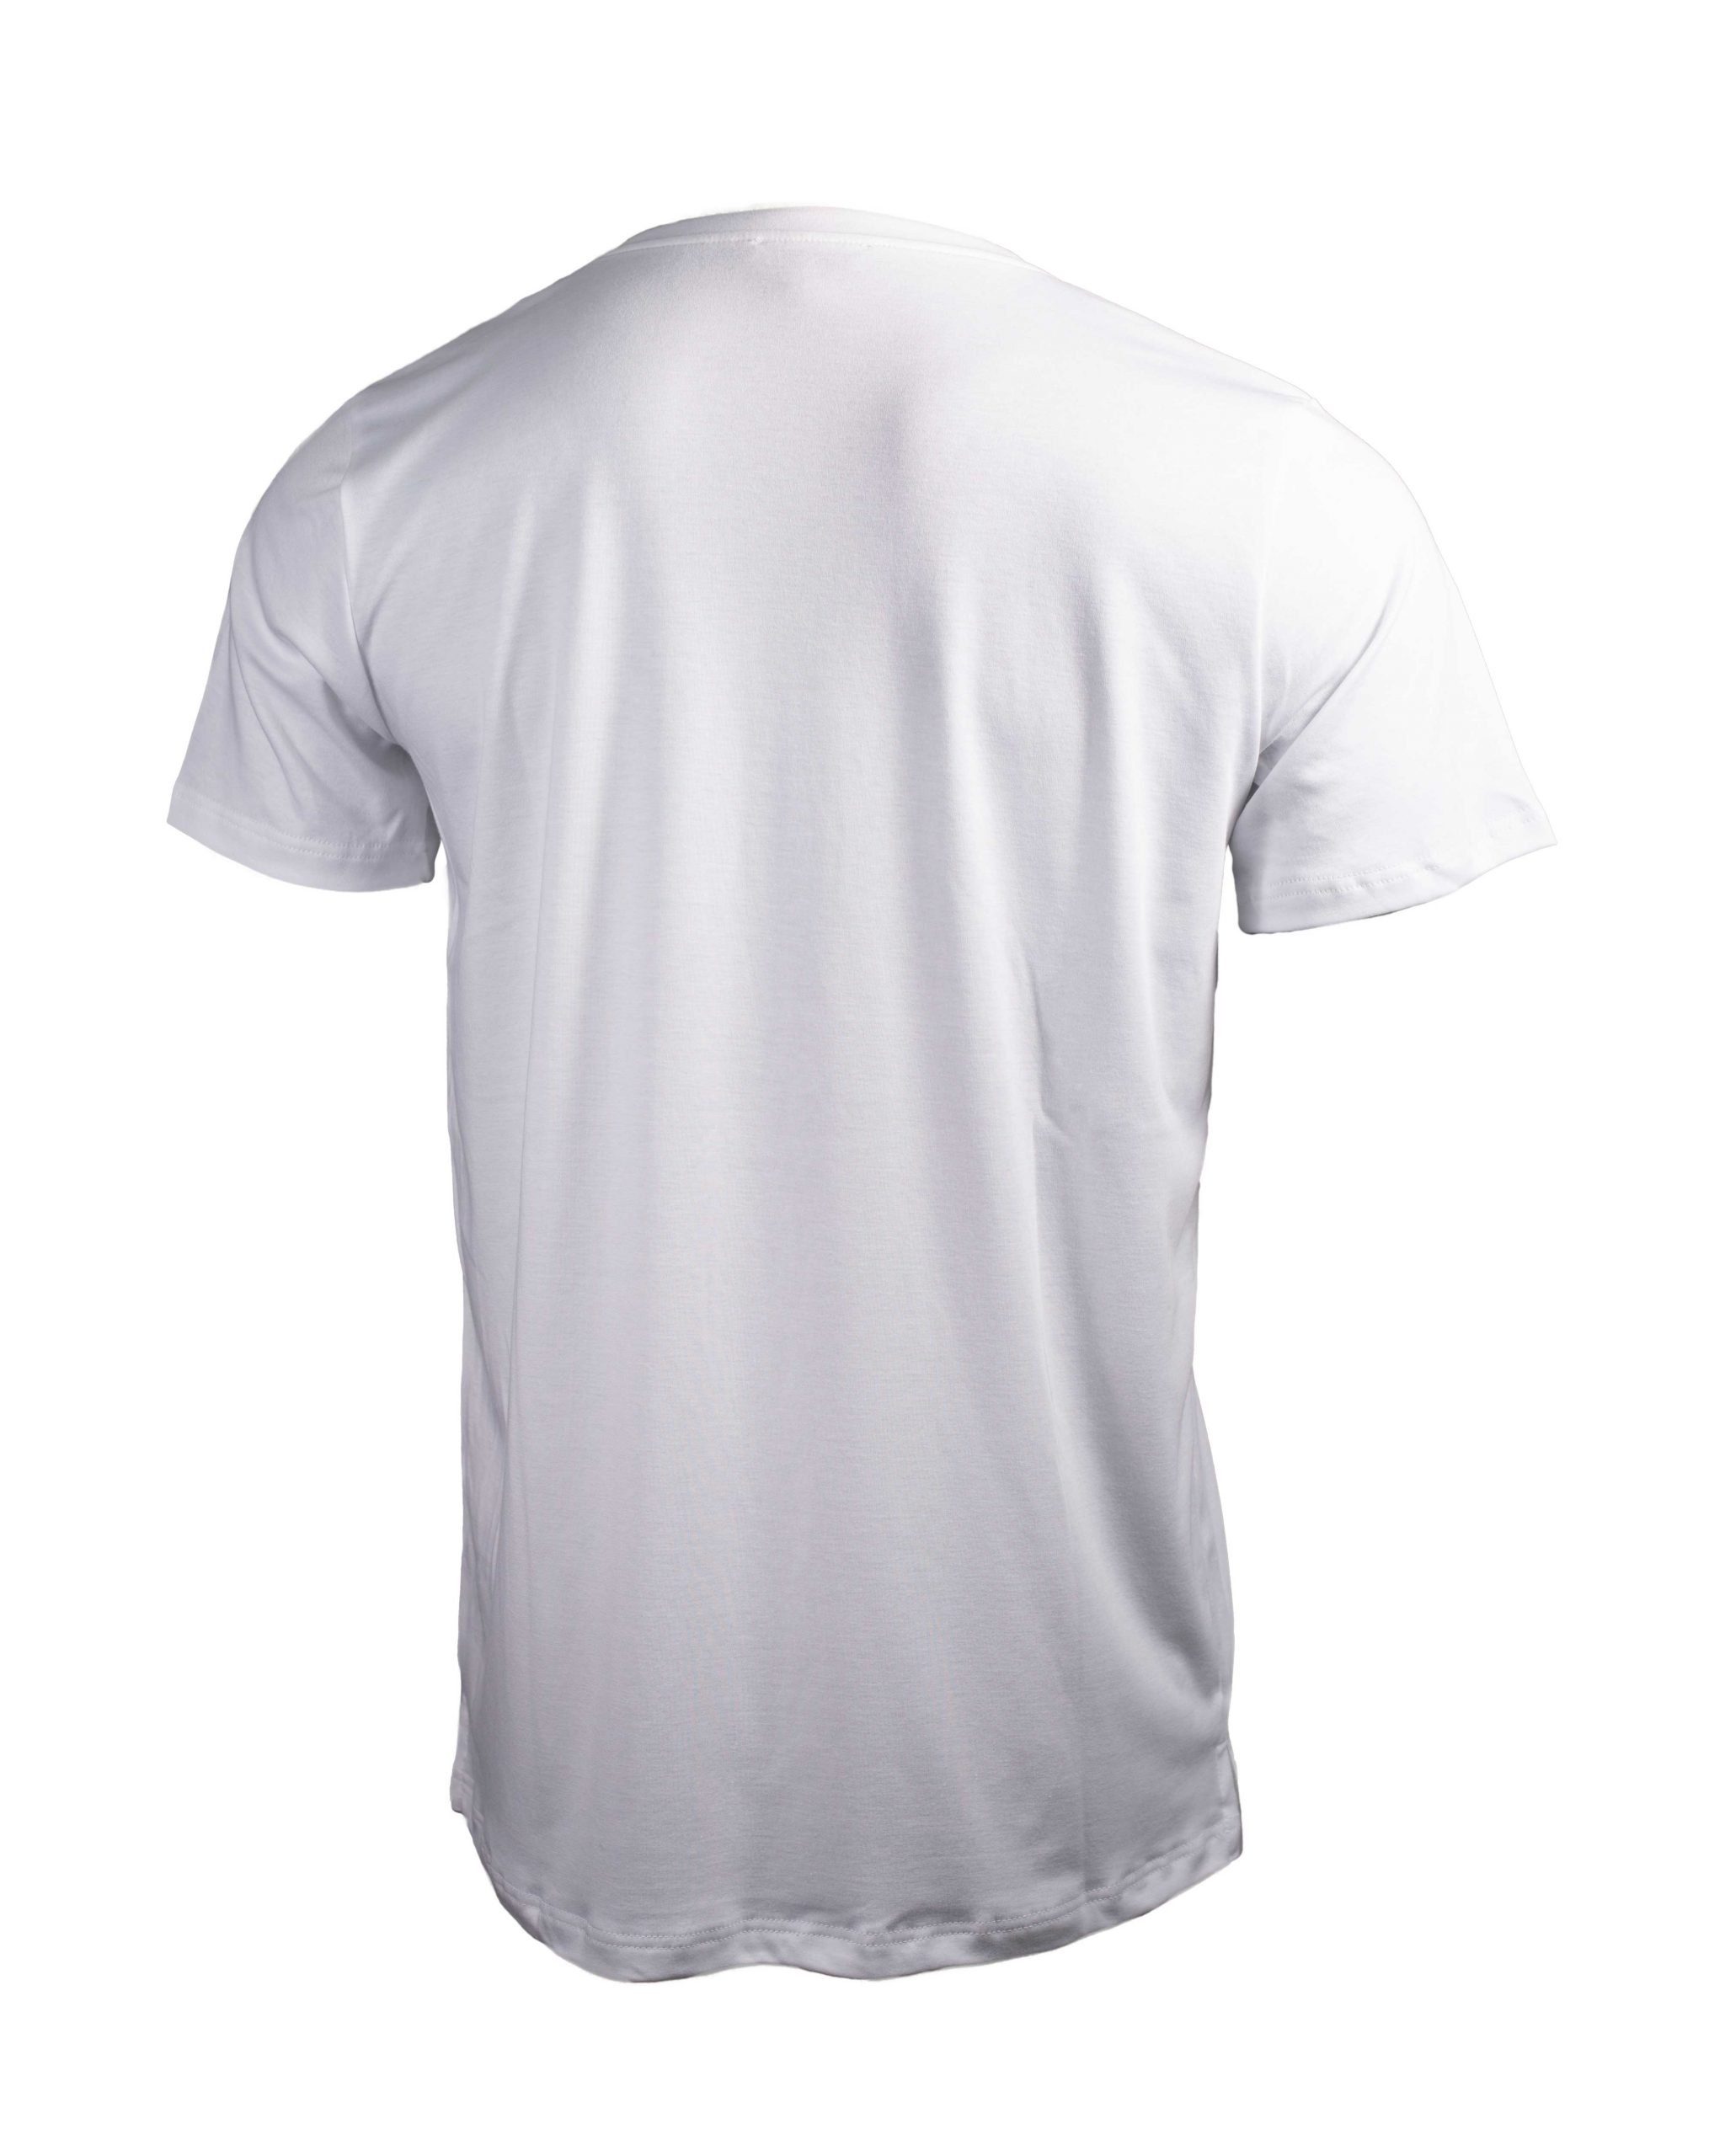 EMPIRE-THIRTEEN T-Shirt SHIRT Weiß Stickerei MEN BASIC "EMPIRE-THIRTEEN"